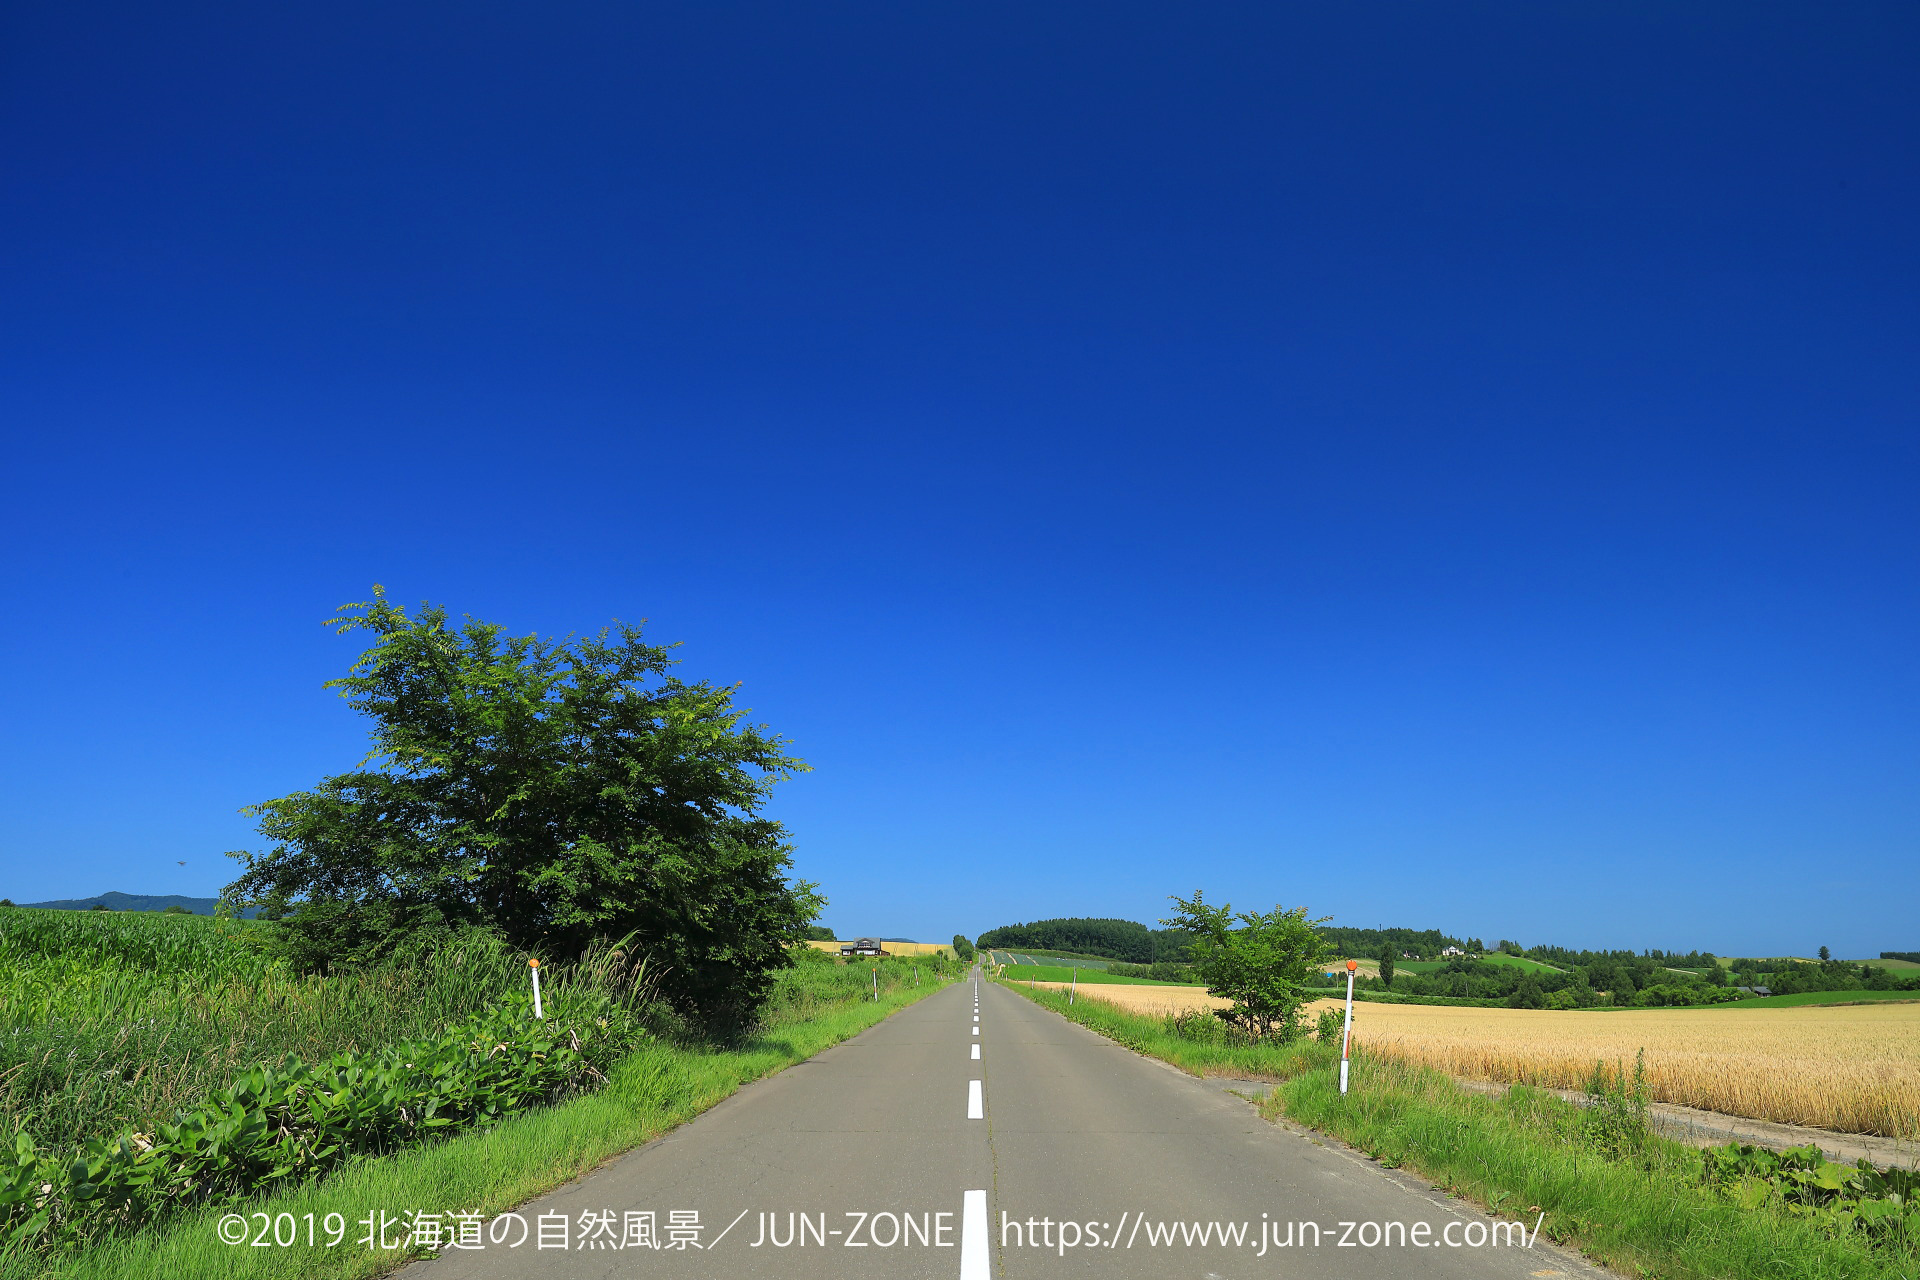 日本の風景 夏の美瑛 上富良野 丘への道 壁紙19x1280 壁紙館